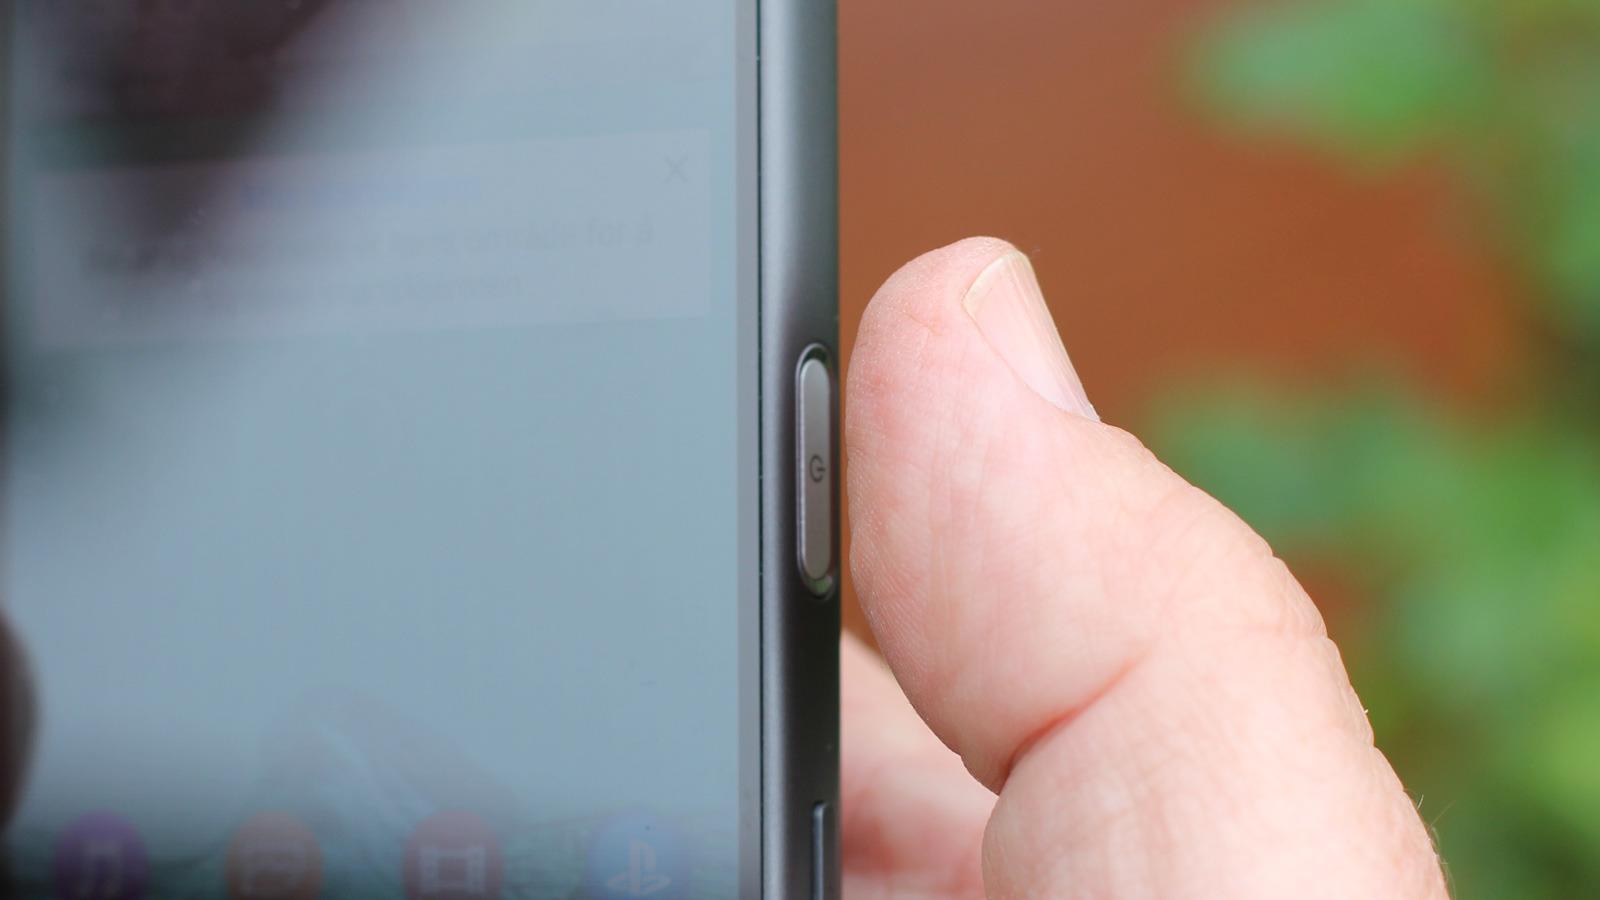 Z5-telefonene er først ut med fingersensor fra Sony. Det er også de første mobilene vi vet om som har sensoren på siden av telefonen.Foto: Espen Irwing Swang, Tek.no